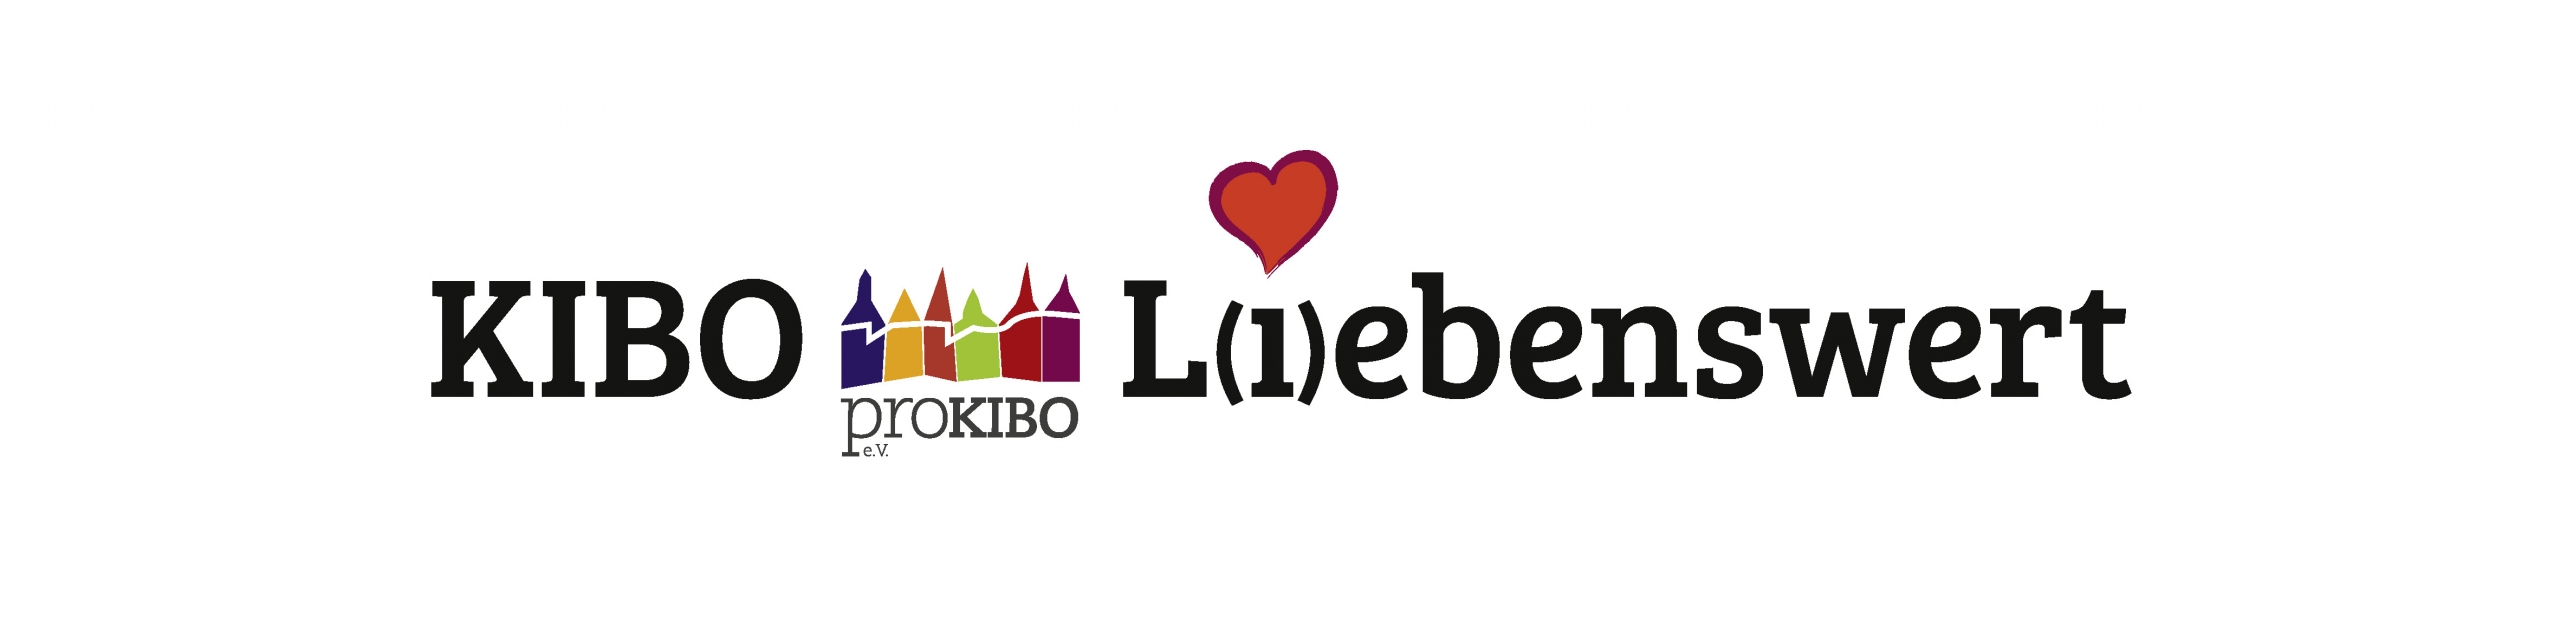 Kibo liebenswert eine Initiative von pro KIBO e.V.